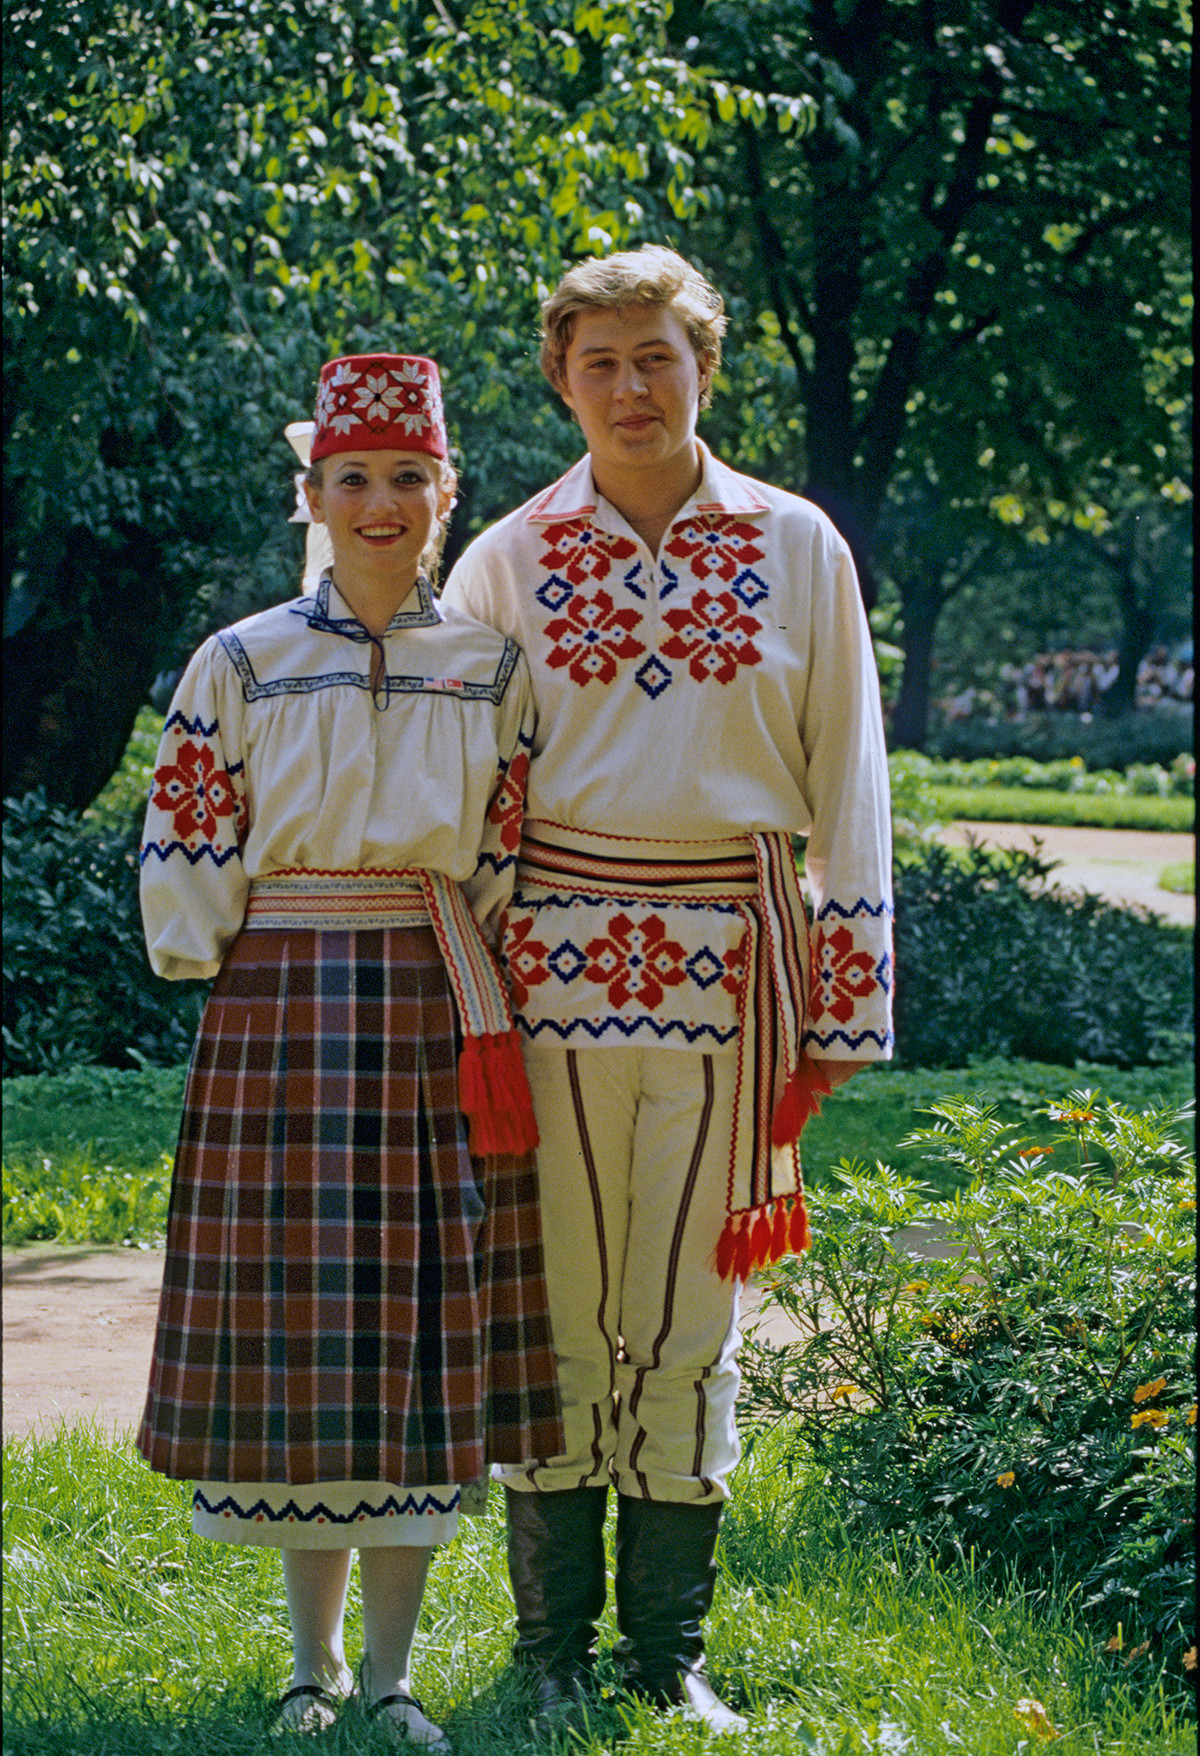 ソ連の民族衣装とはどのようなものだったのか ロシア ビヨンド